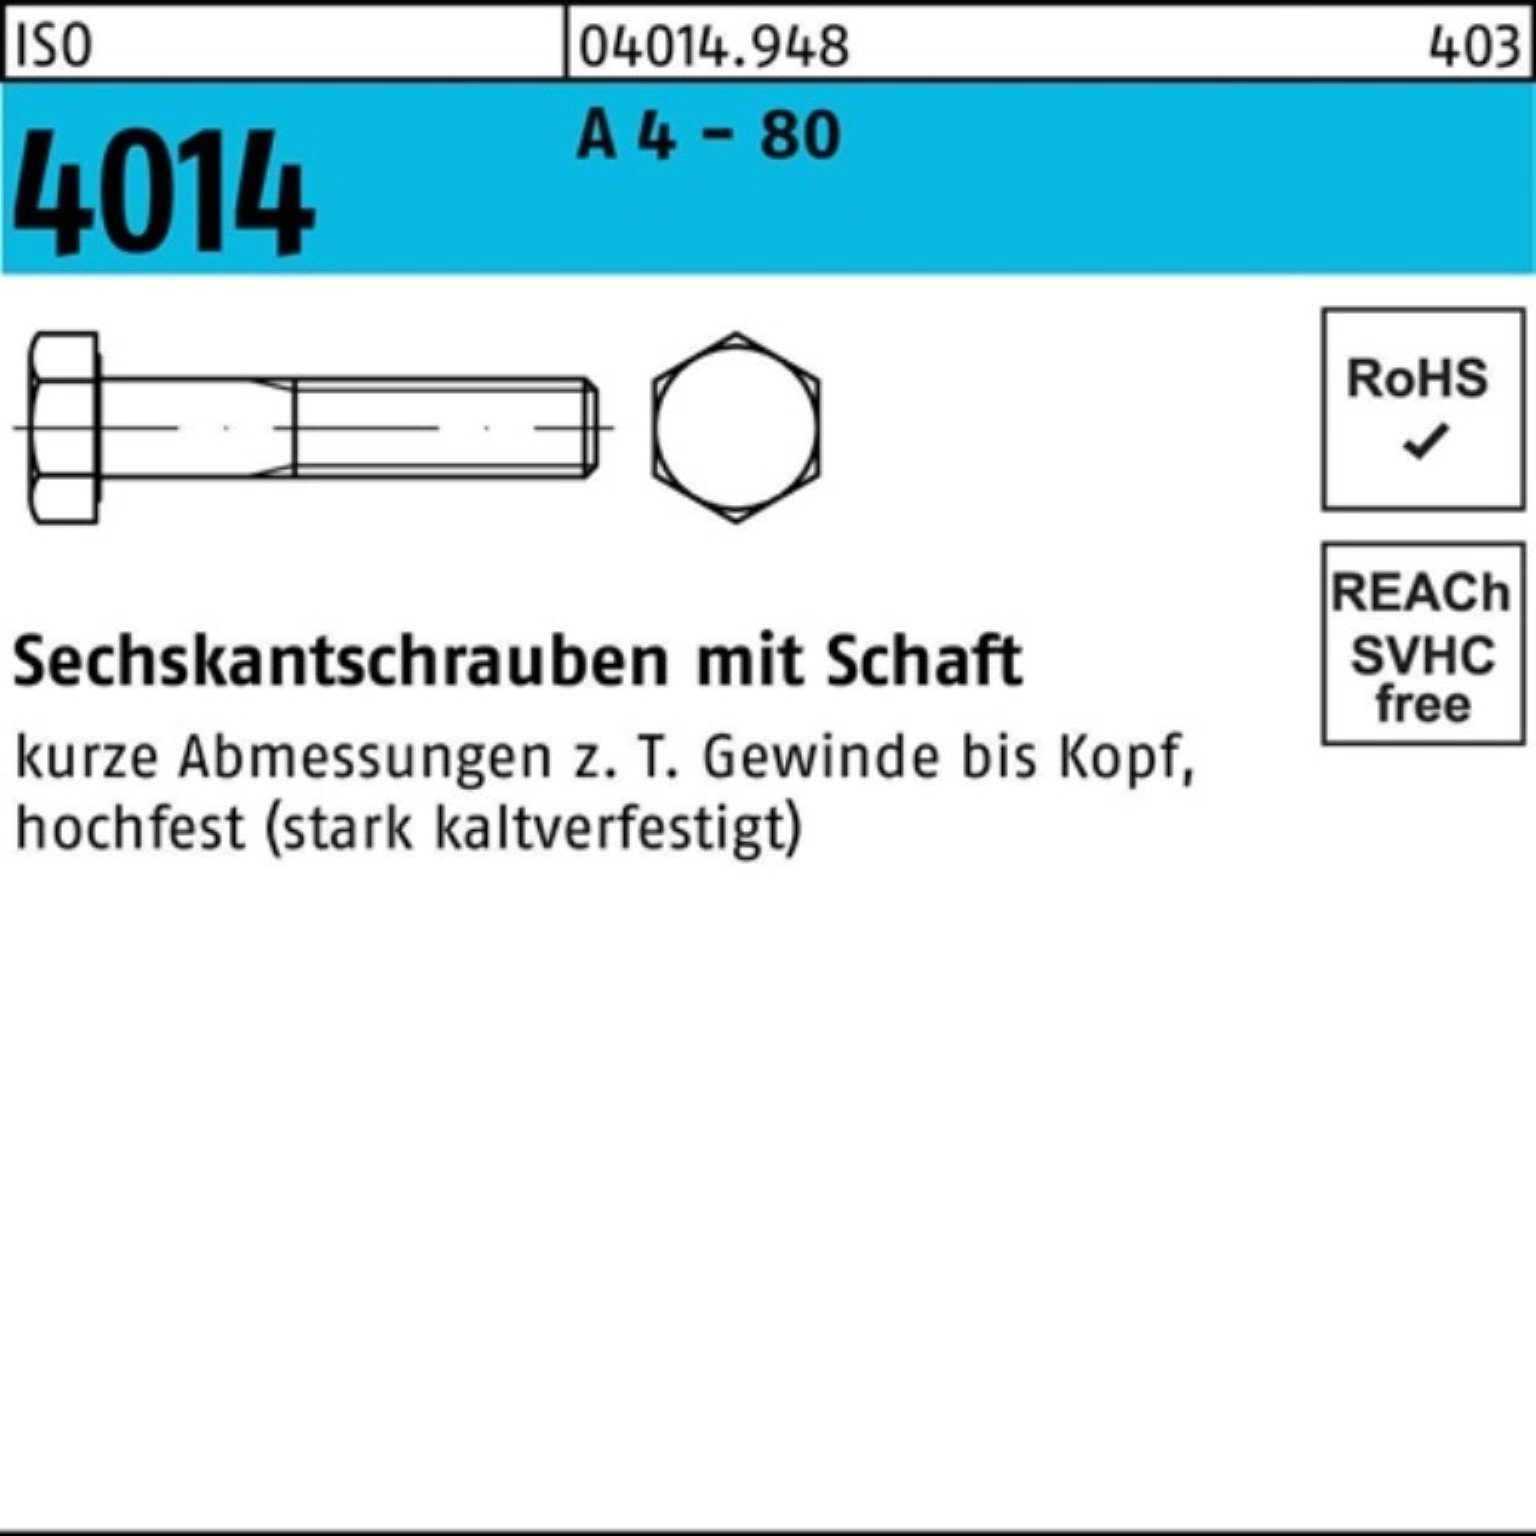 4 A Pack Sechskantschraube - 80 Reyher 4014 Sechskantschraube ISO 100er Stüc 1 M12x Schaft 180